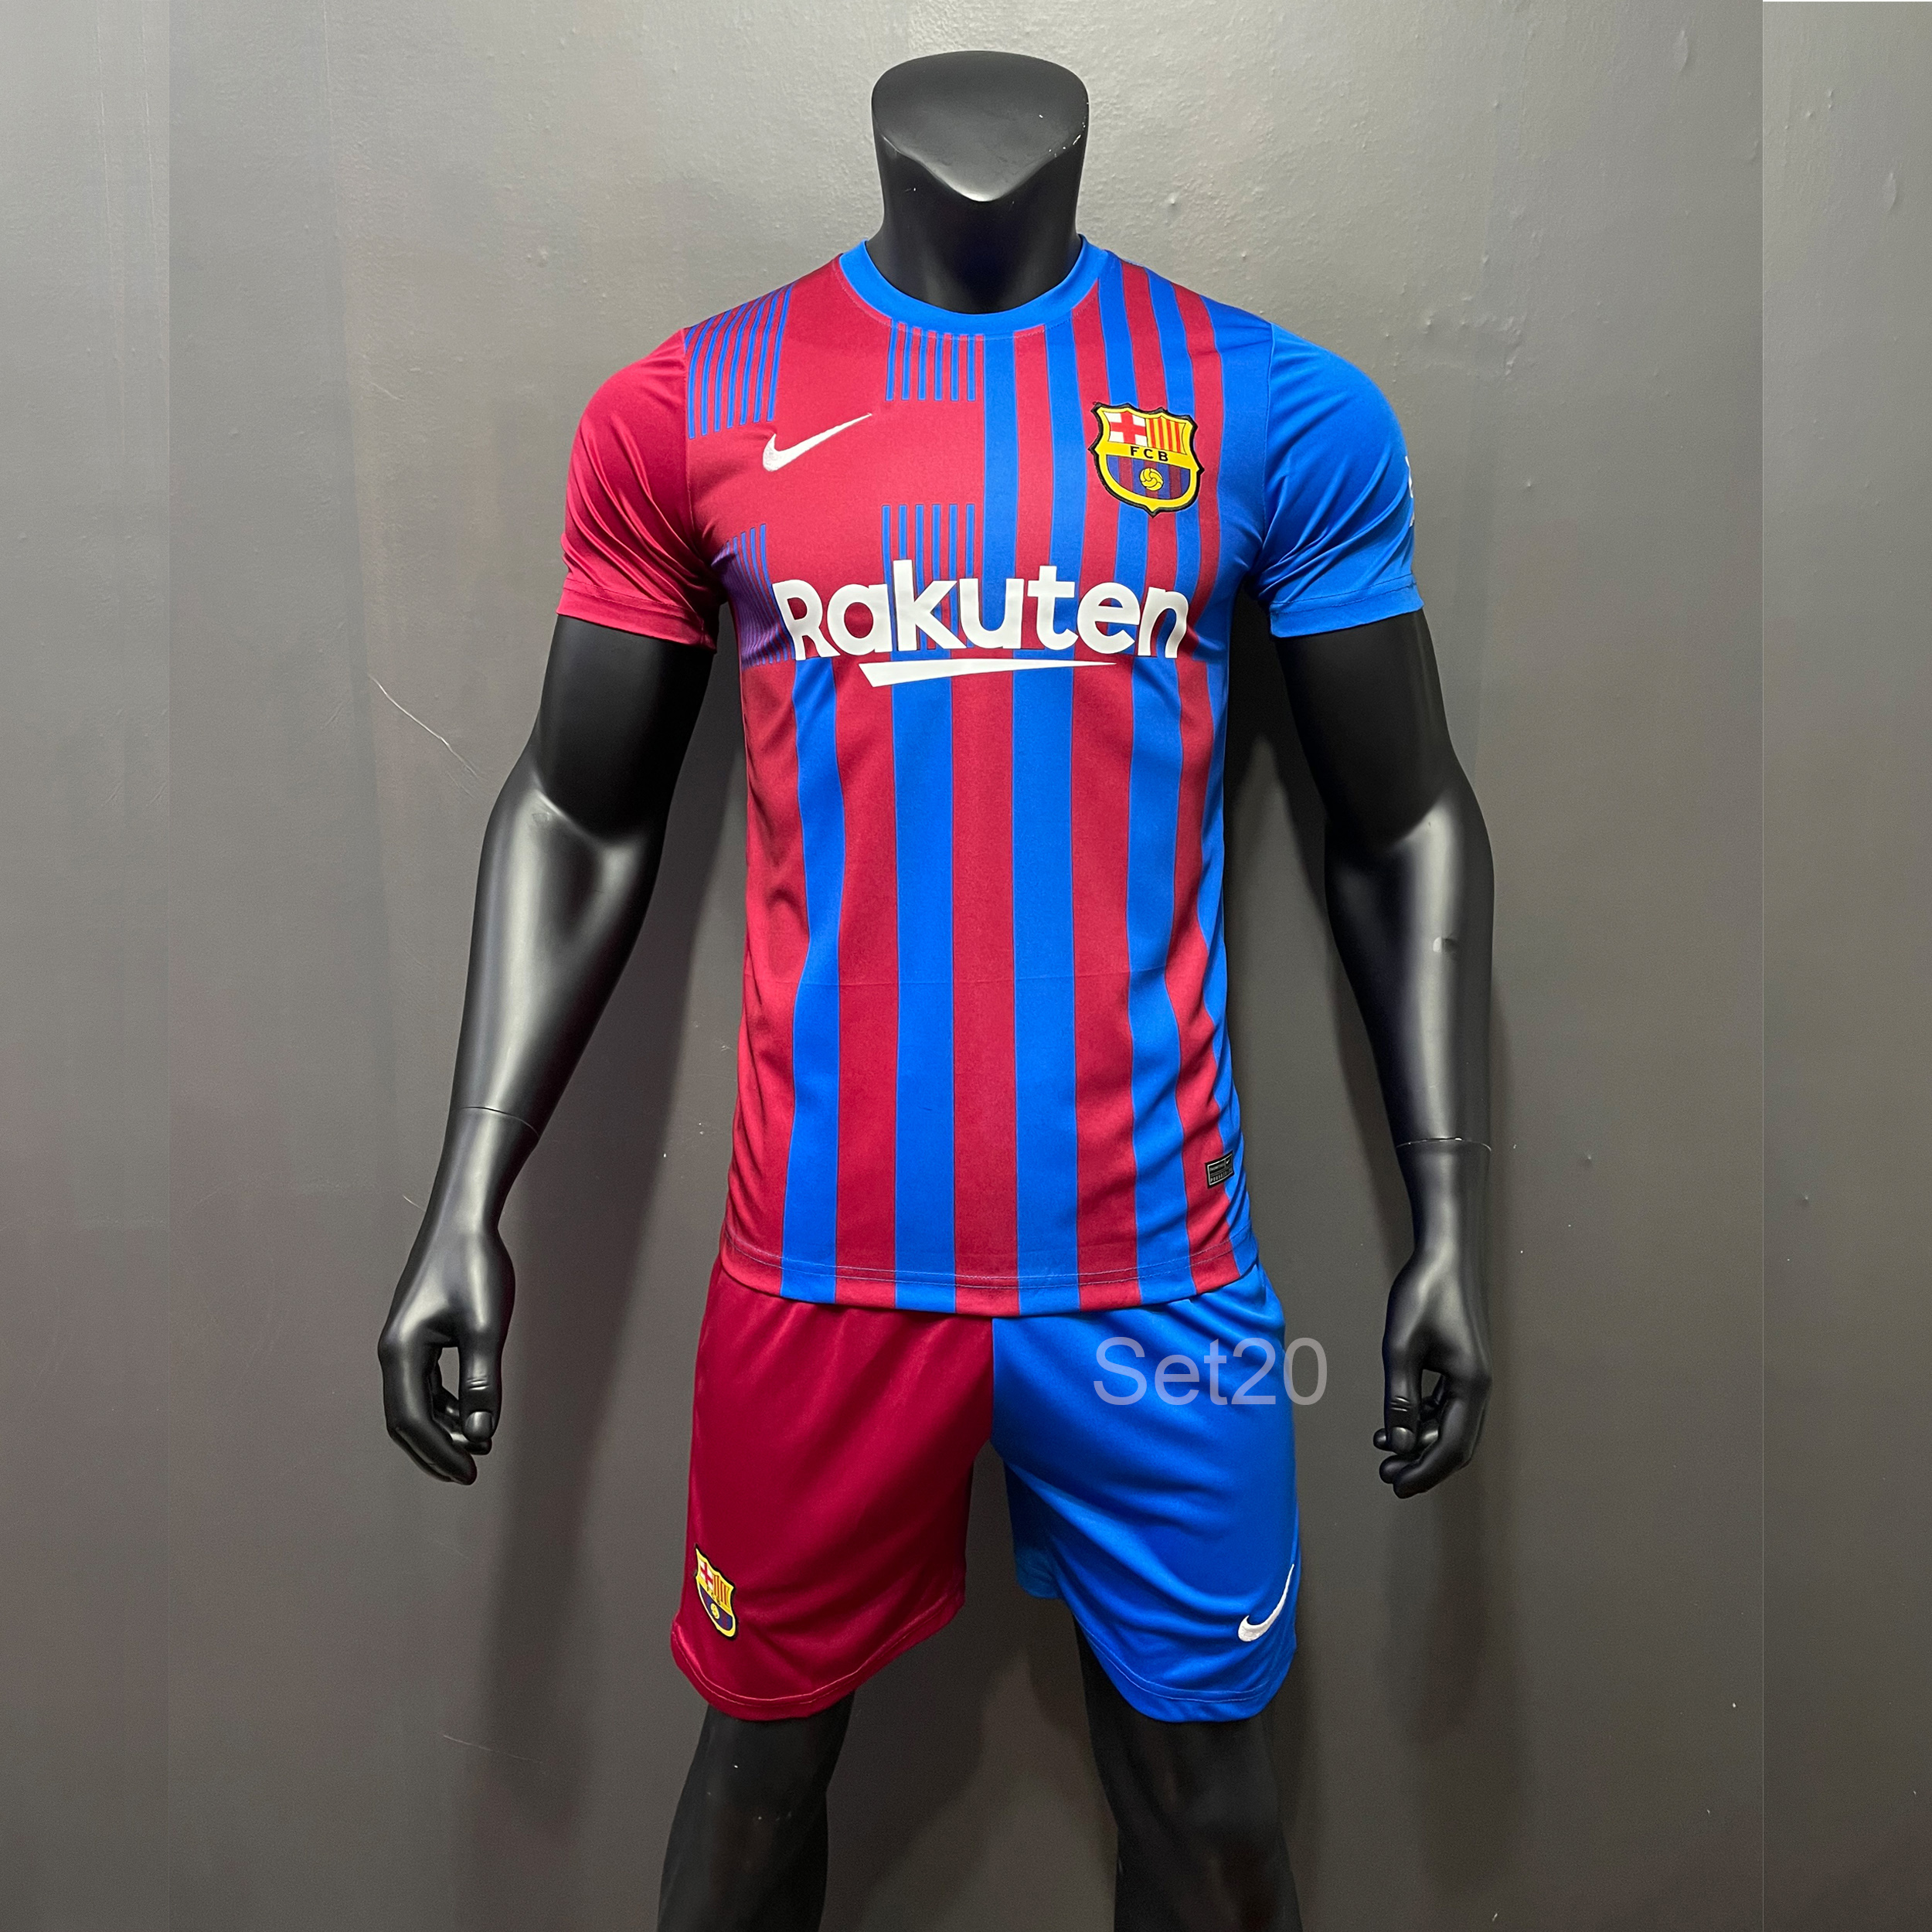 ชุดกีฬาผูู้ชาย ชุดบอล ชุดสโมสรฟุตบอลSet Barcelona ฤดูกาล 21/22 (เสื้อ+กางเกง) ทีมบาสเซโลน่า เนื้อผ้าโพลีเอสเตอร์ งานเซตเกรด A